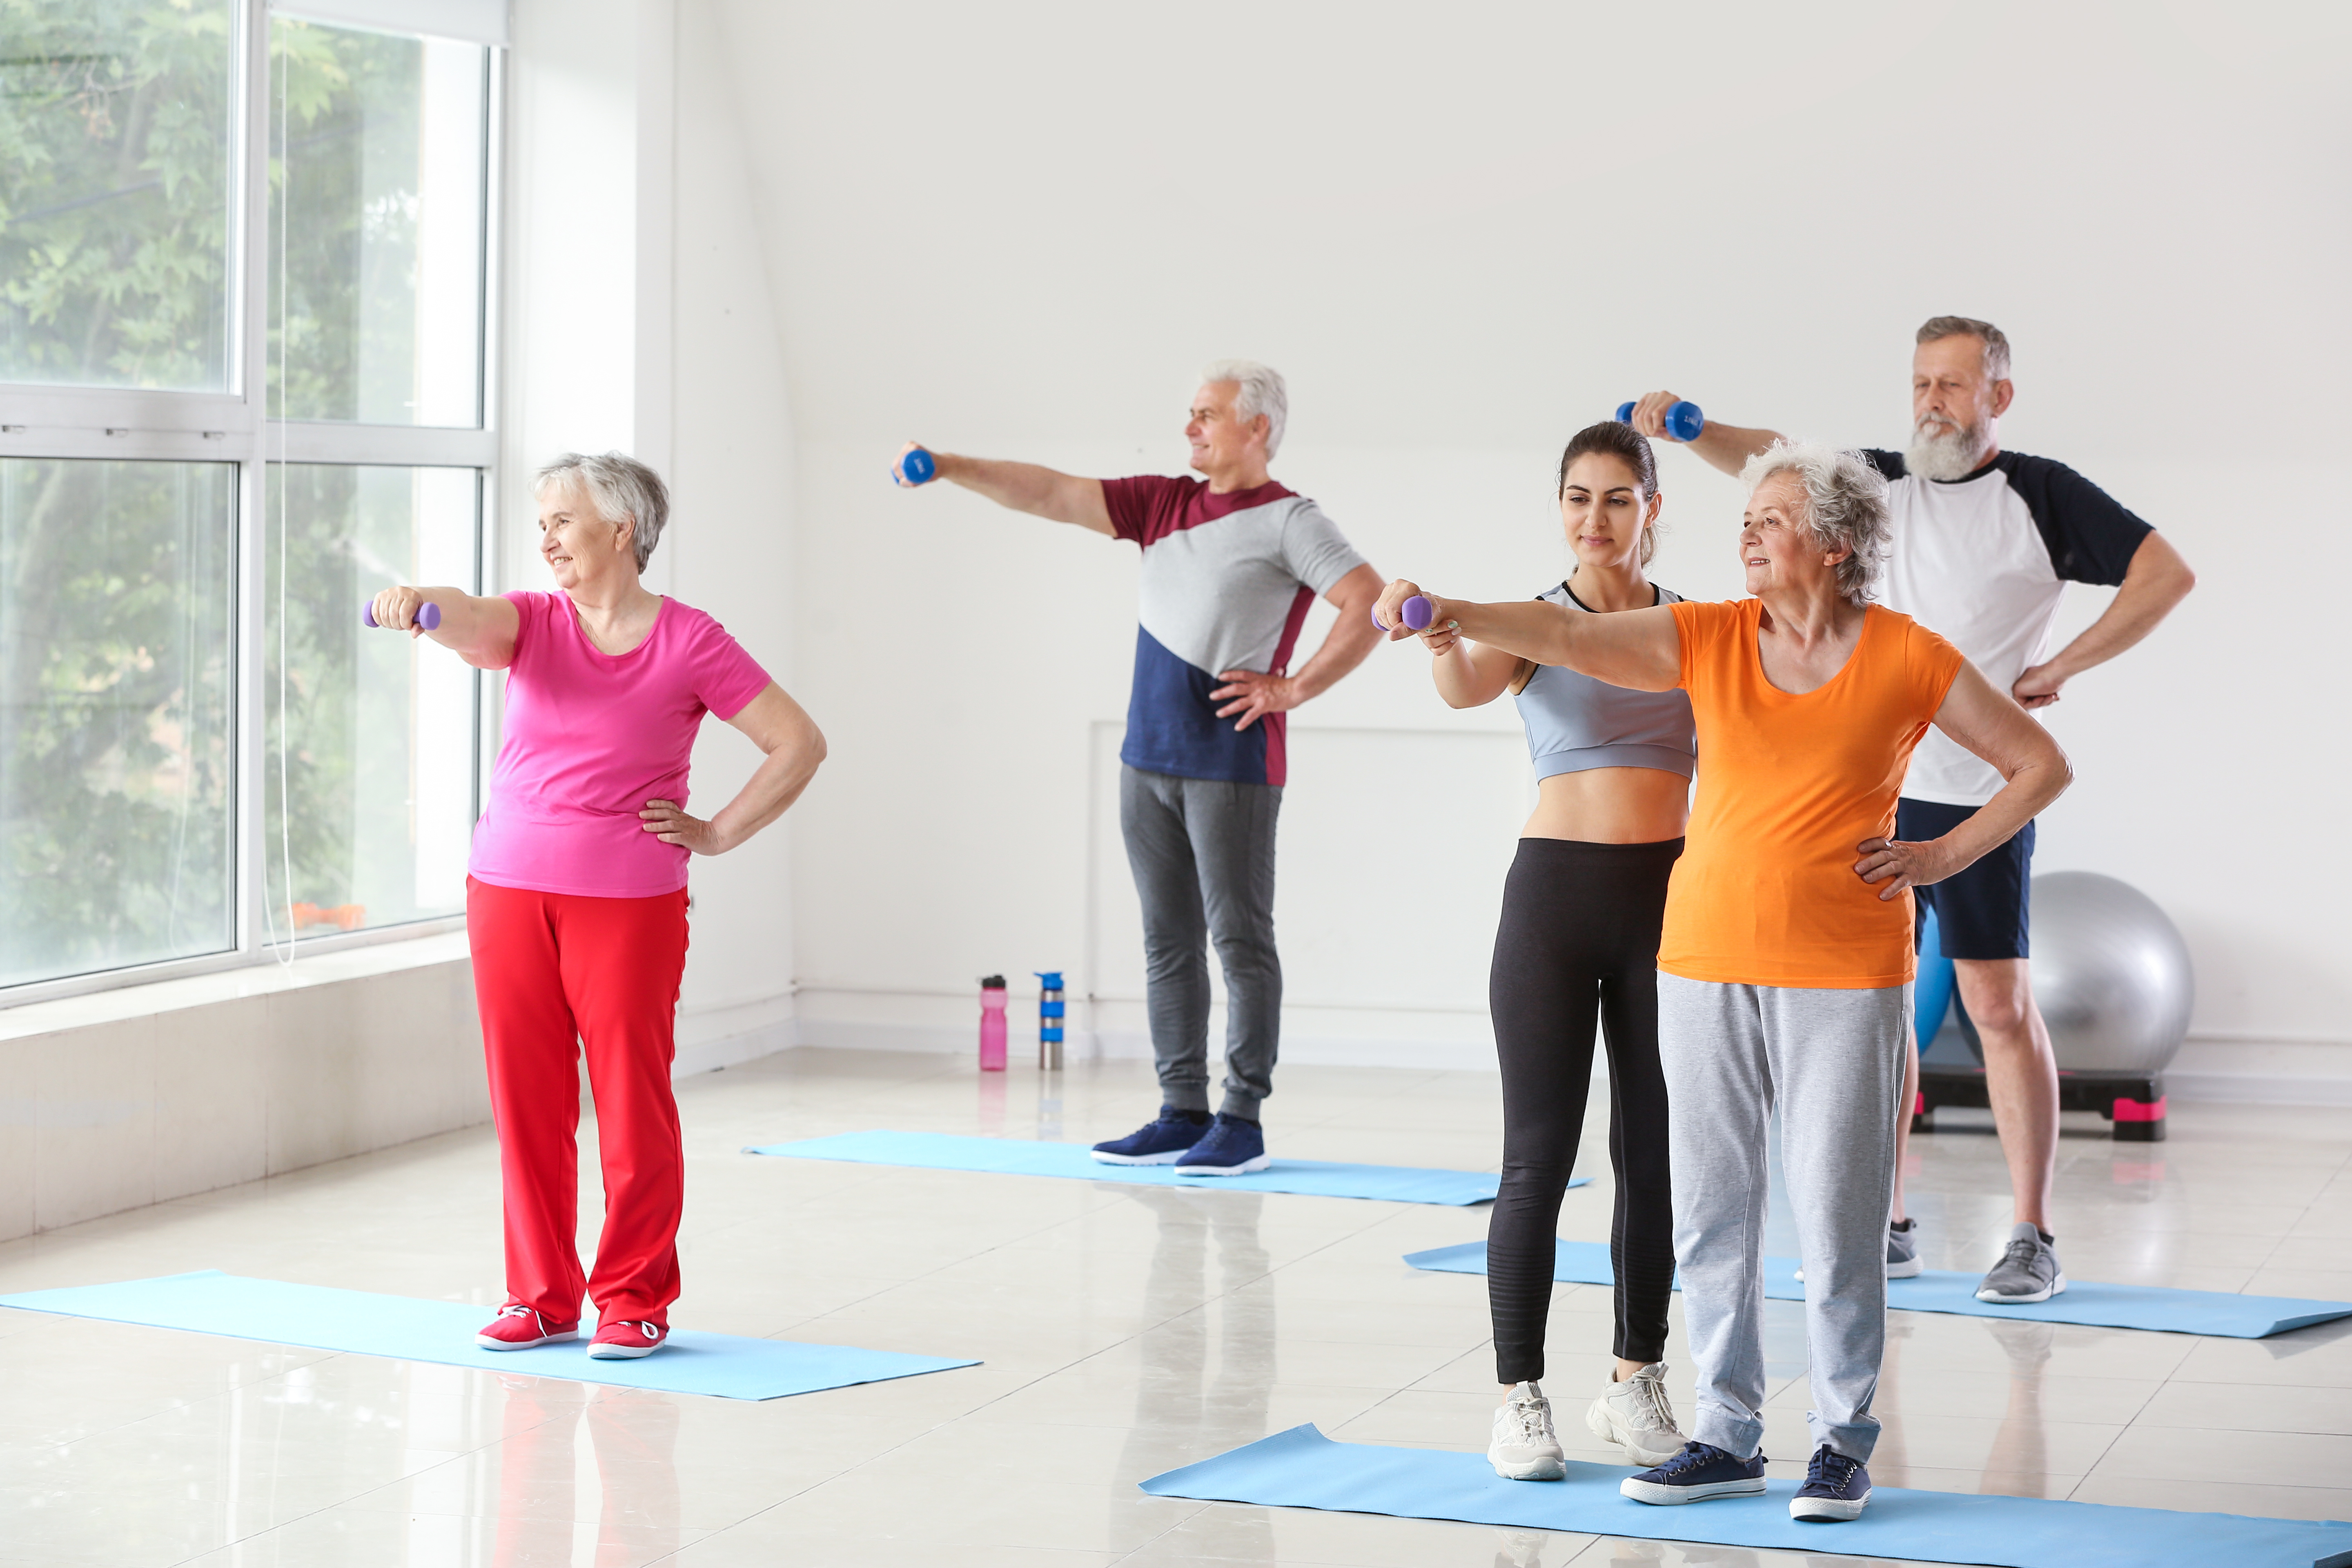 Un essai en faveur de l’efficacité d’interventions multifactorielles englobant l'entraînement cognitif, l'exercice, l'alimentation, la gestion du risque vasculaire et la motivation pour la santé des personnes âgées (Visuel Adobe Stock 273659147))